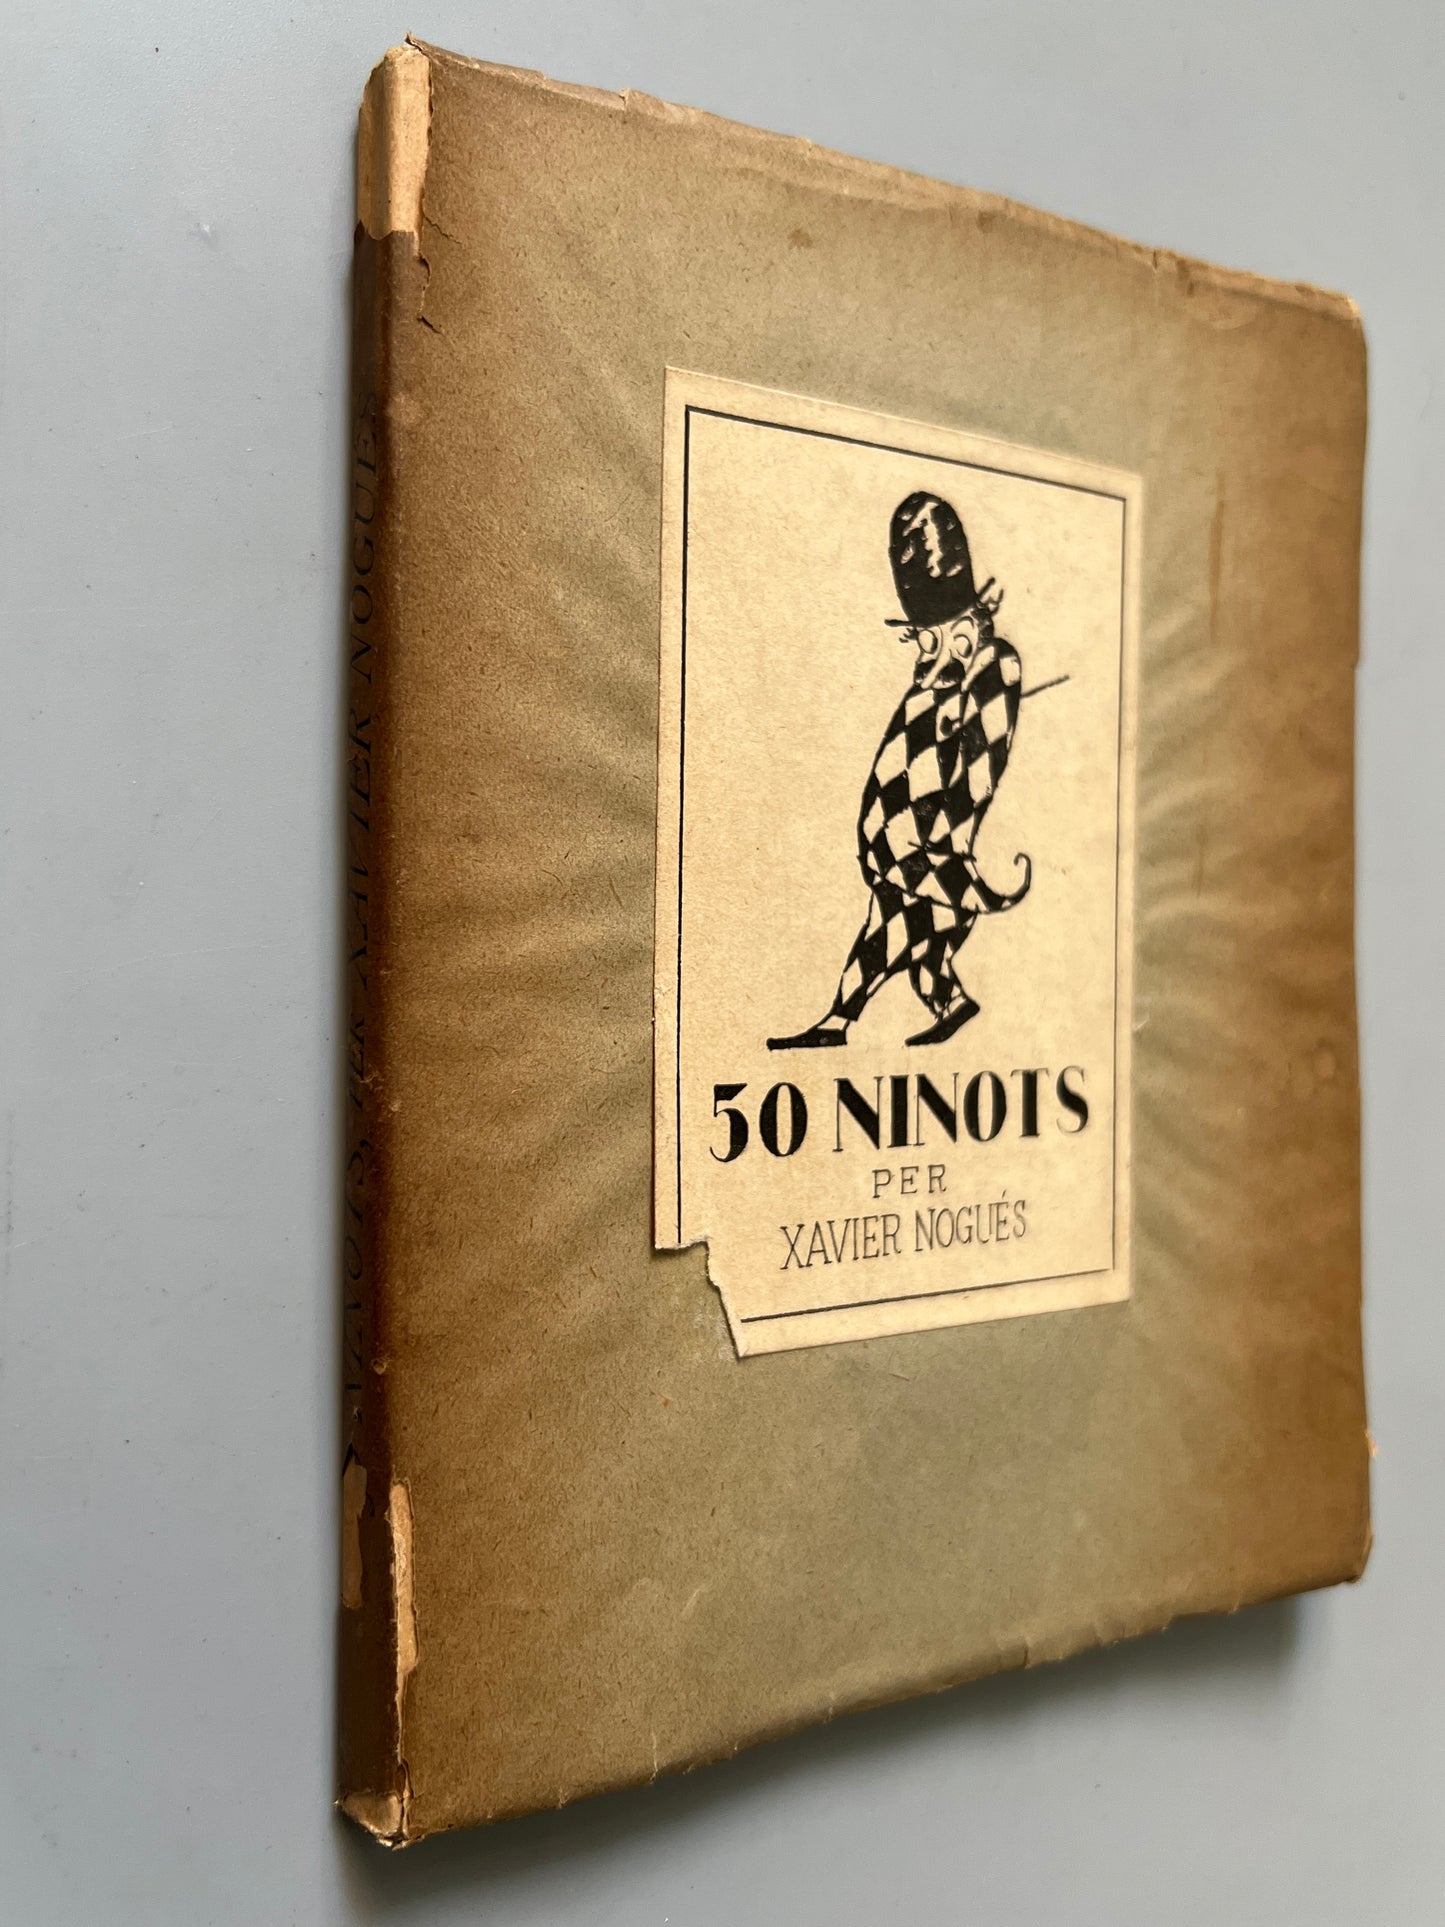 50 ninots, Xavier Nogués - Salvat Papasseit Llibrers, 1922